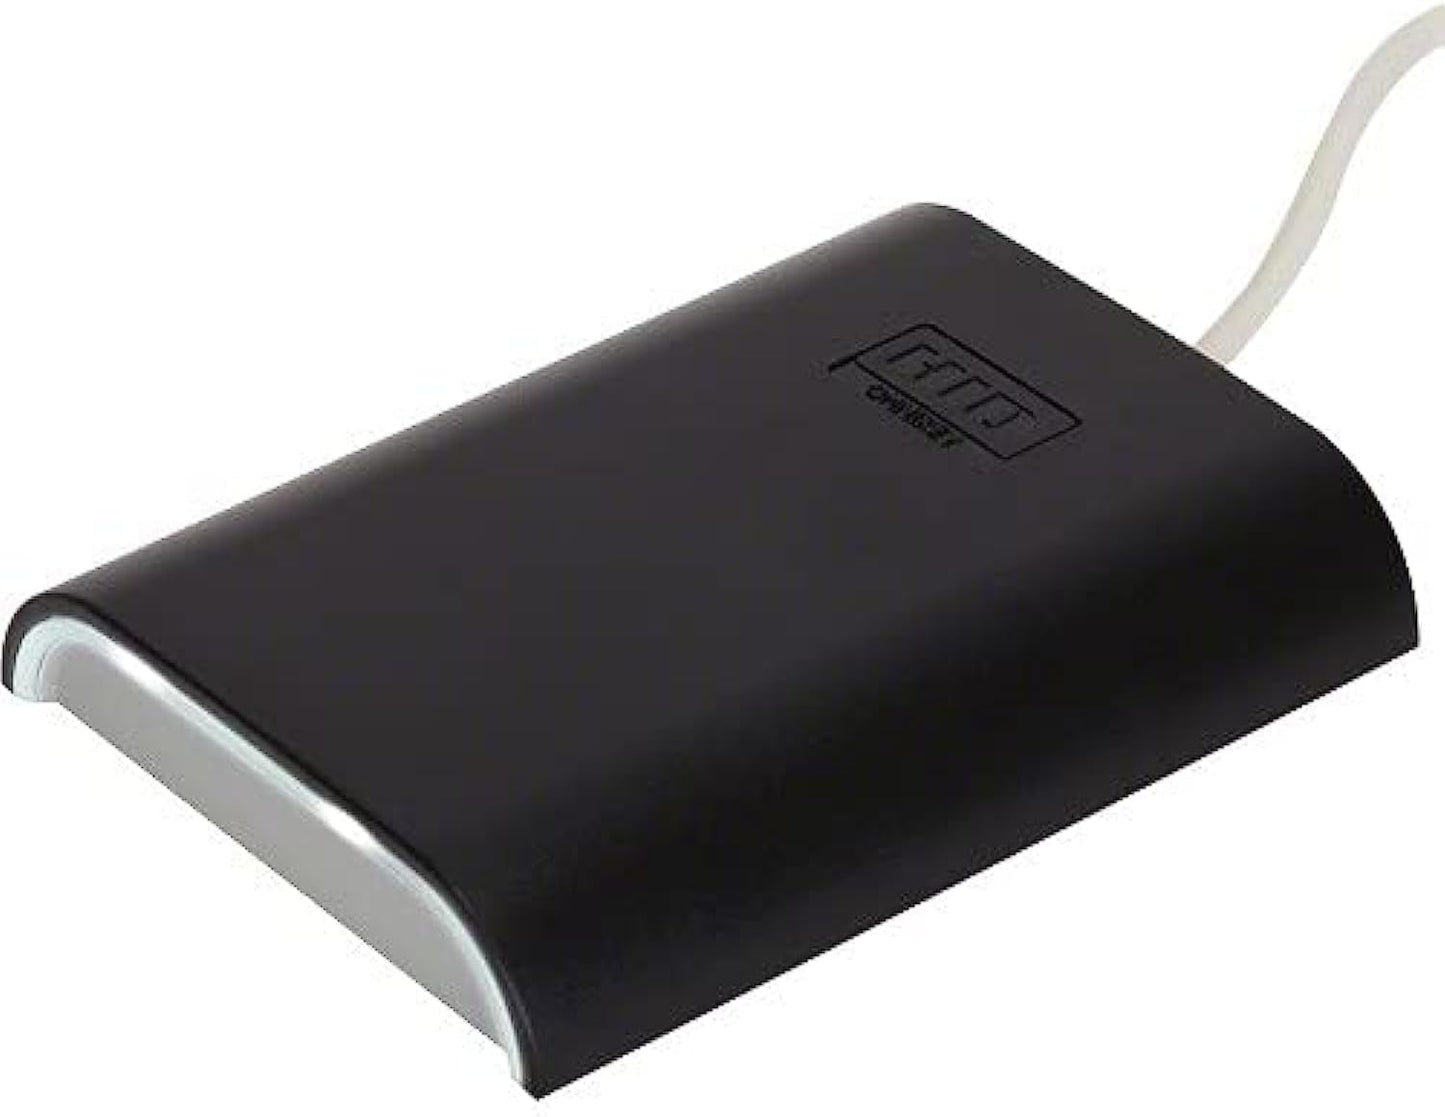 HID Omnikey 5427CK  Gen2 USB Contactless Smart Card Reader R54270101